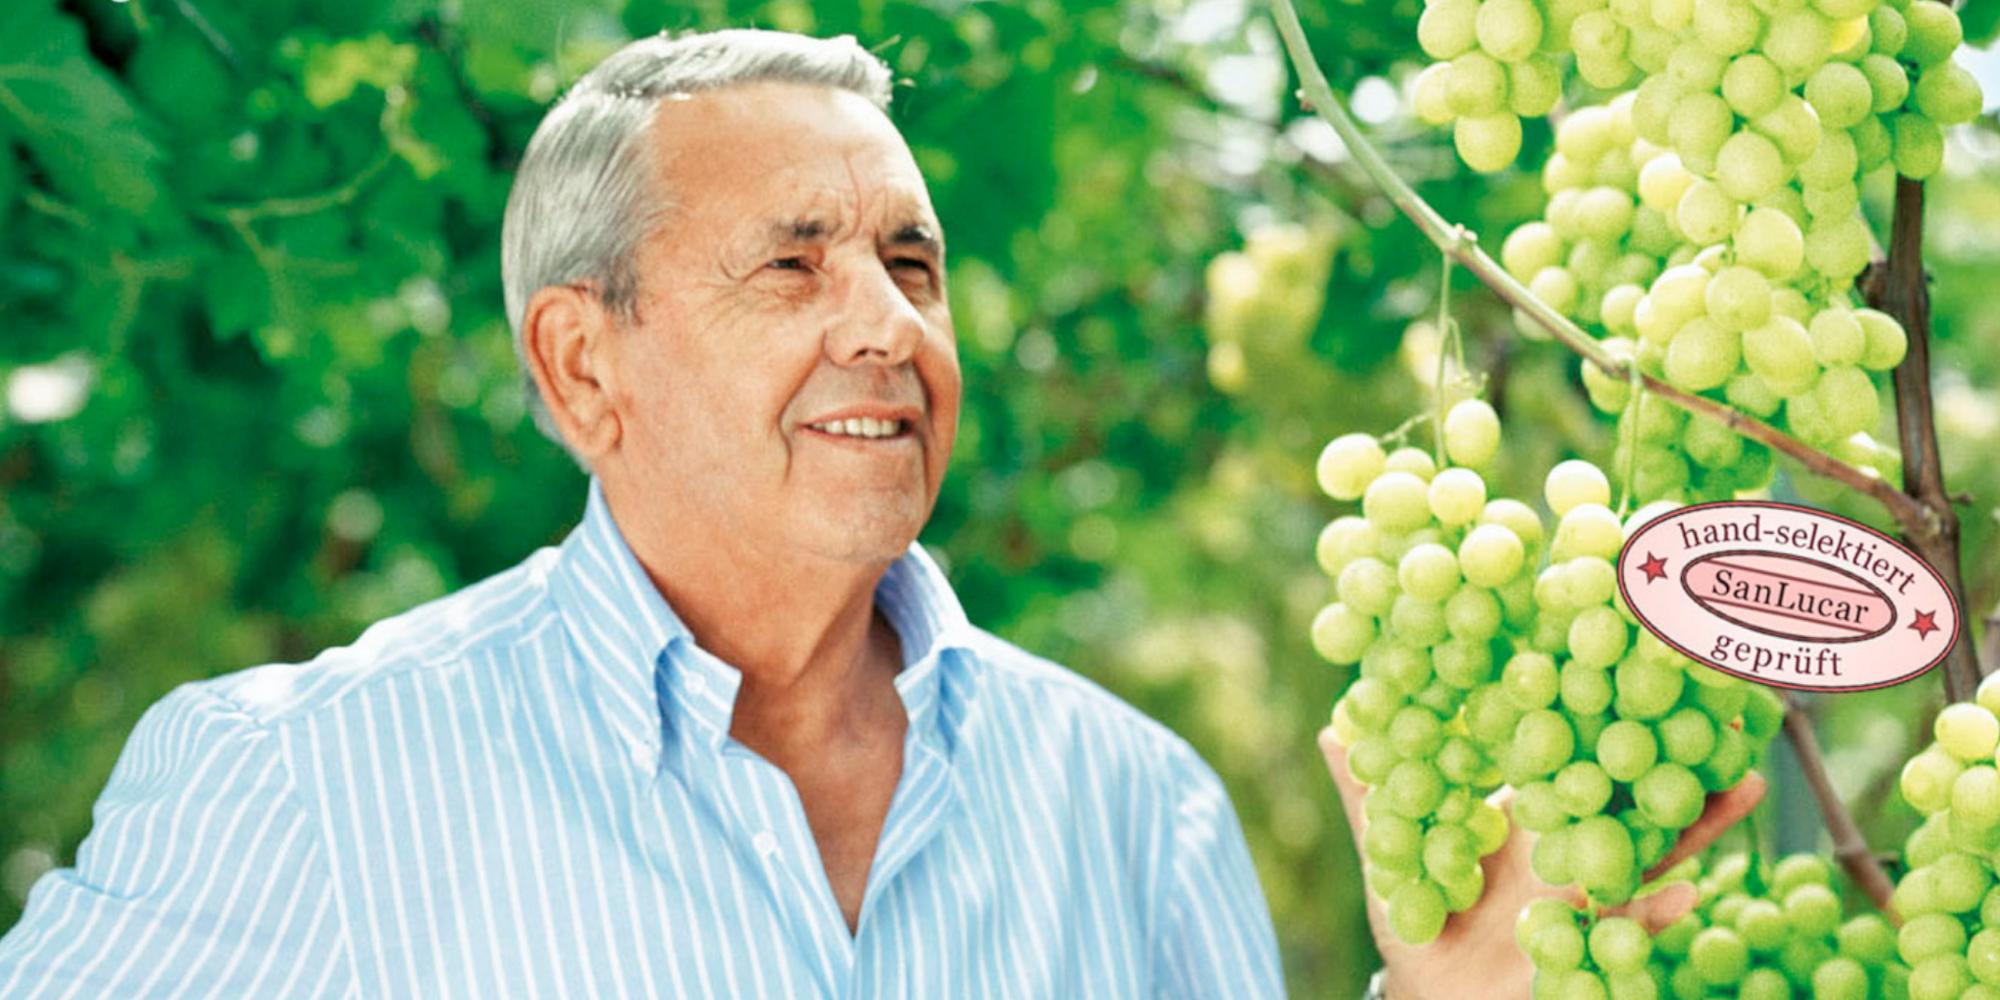 SanLucar Antonio Giuliano hält Weintrauben in der Hand